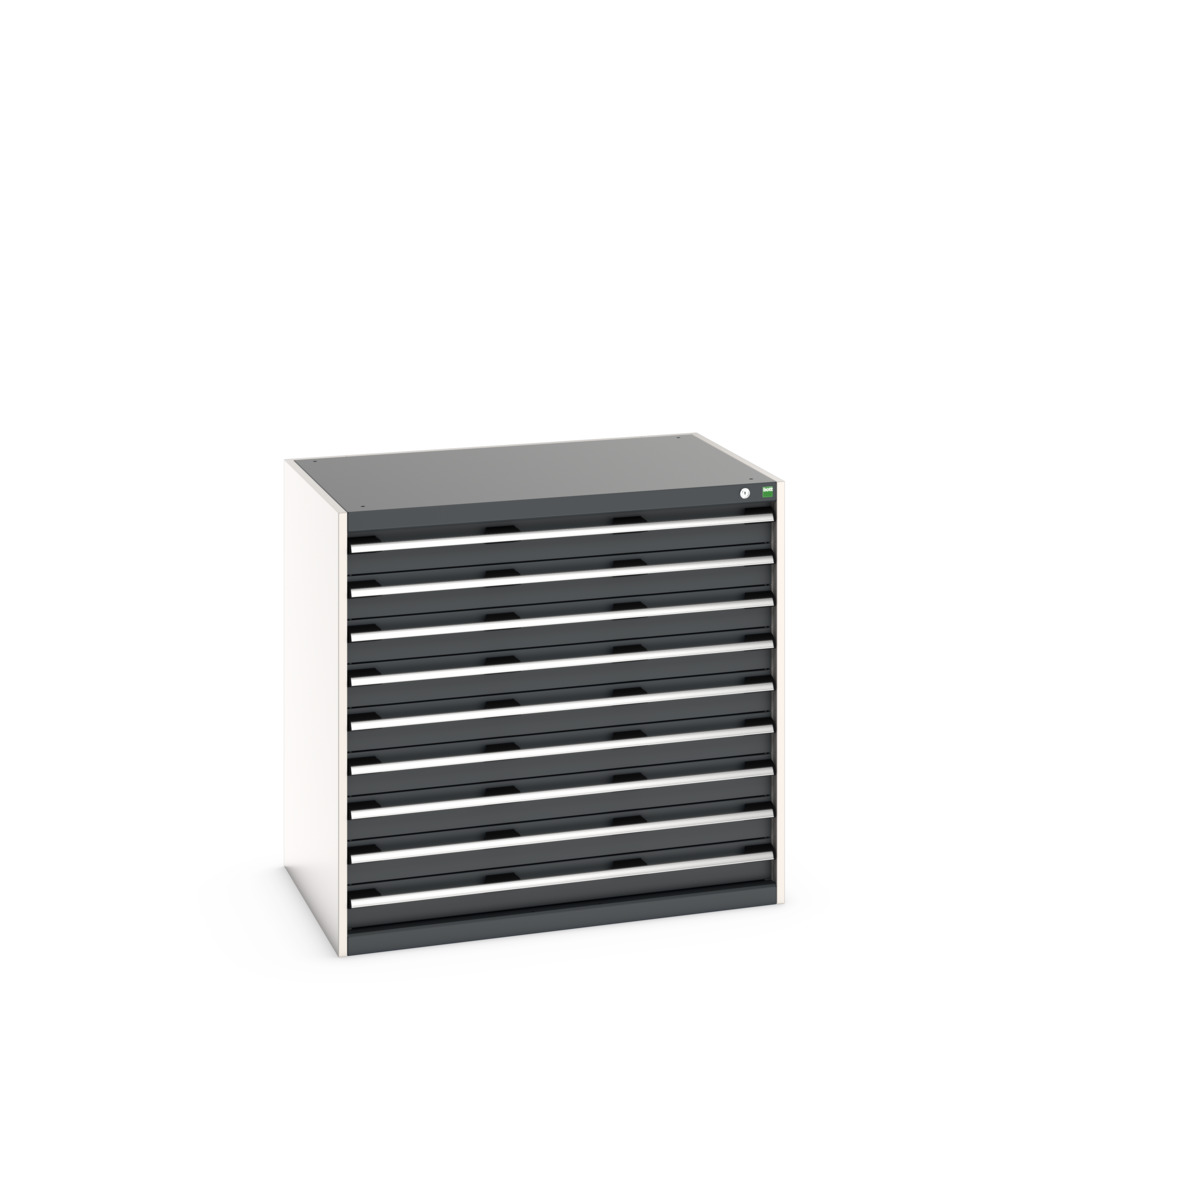 40029027.19V - cubio drawer cabinet